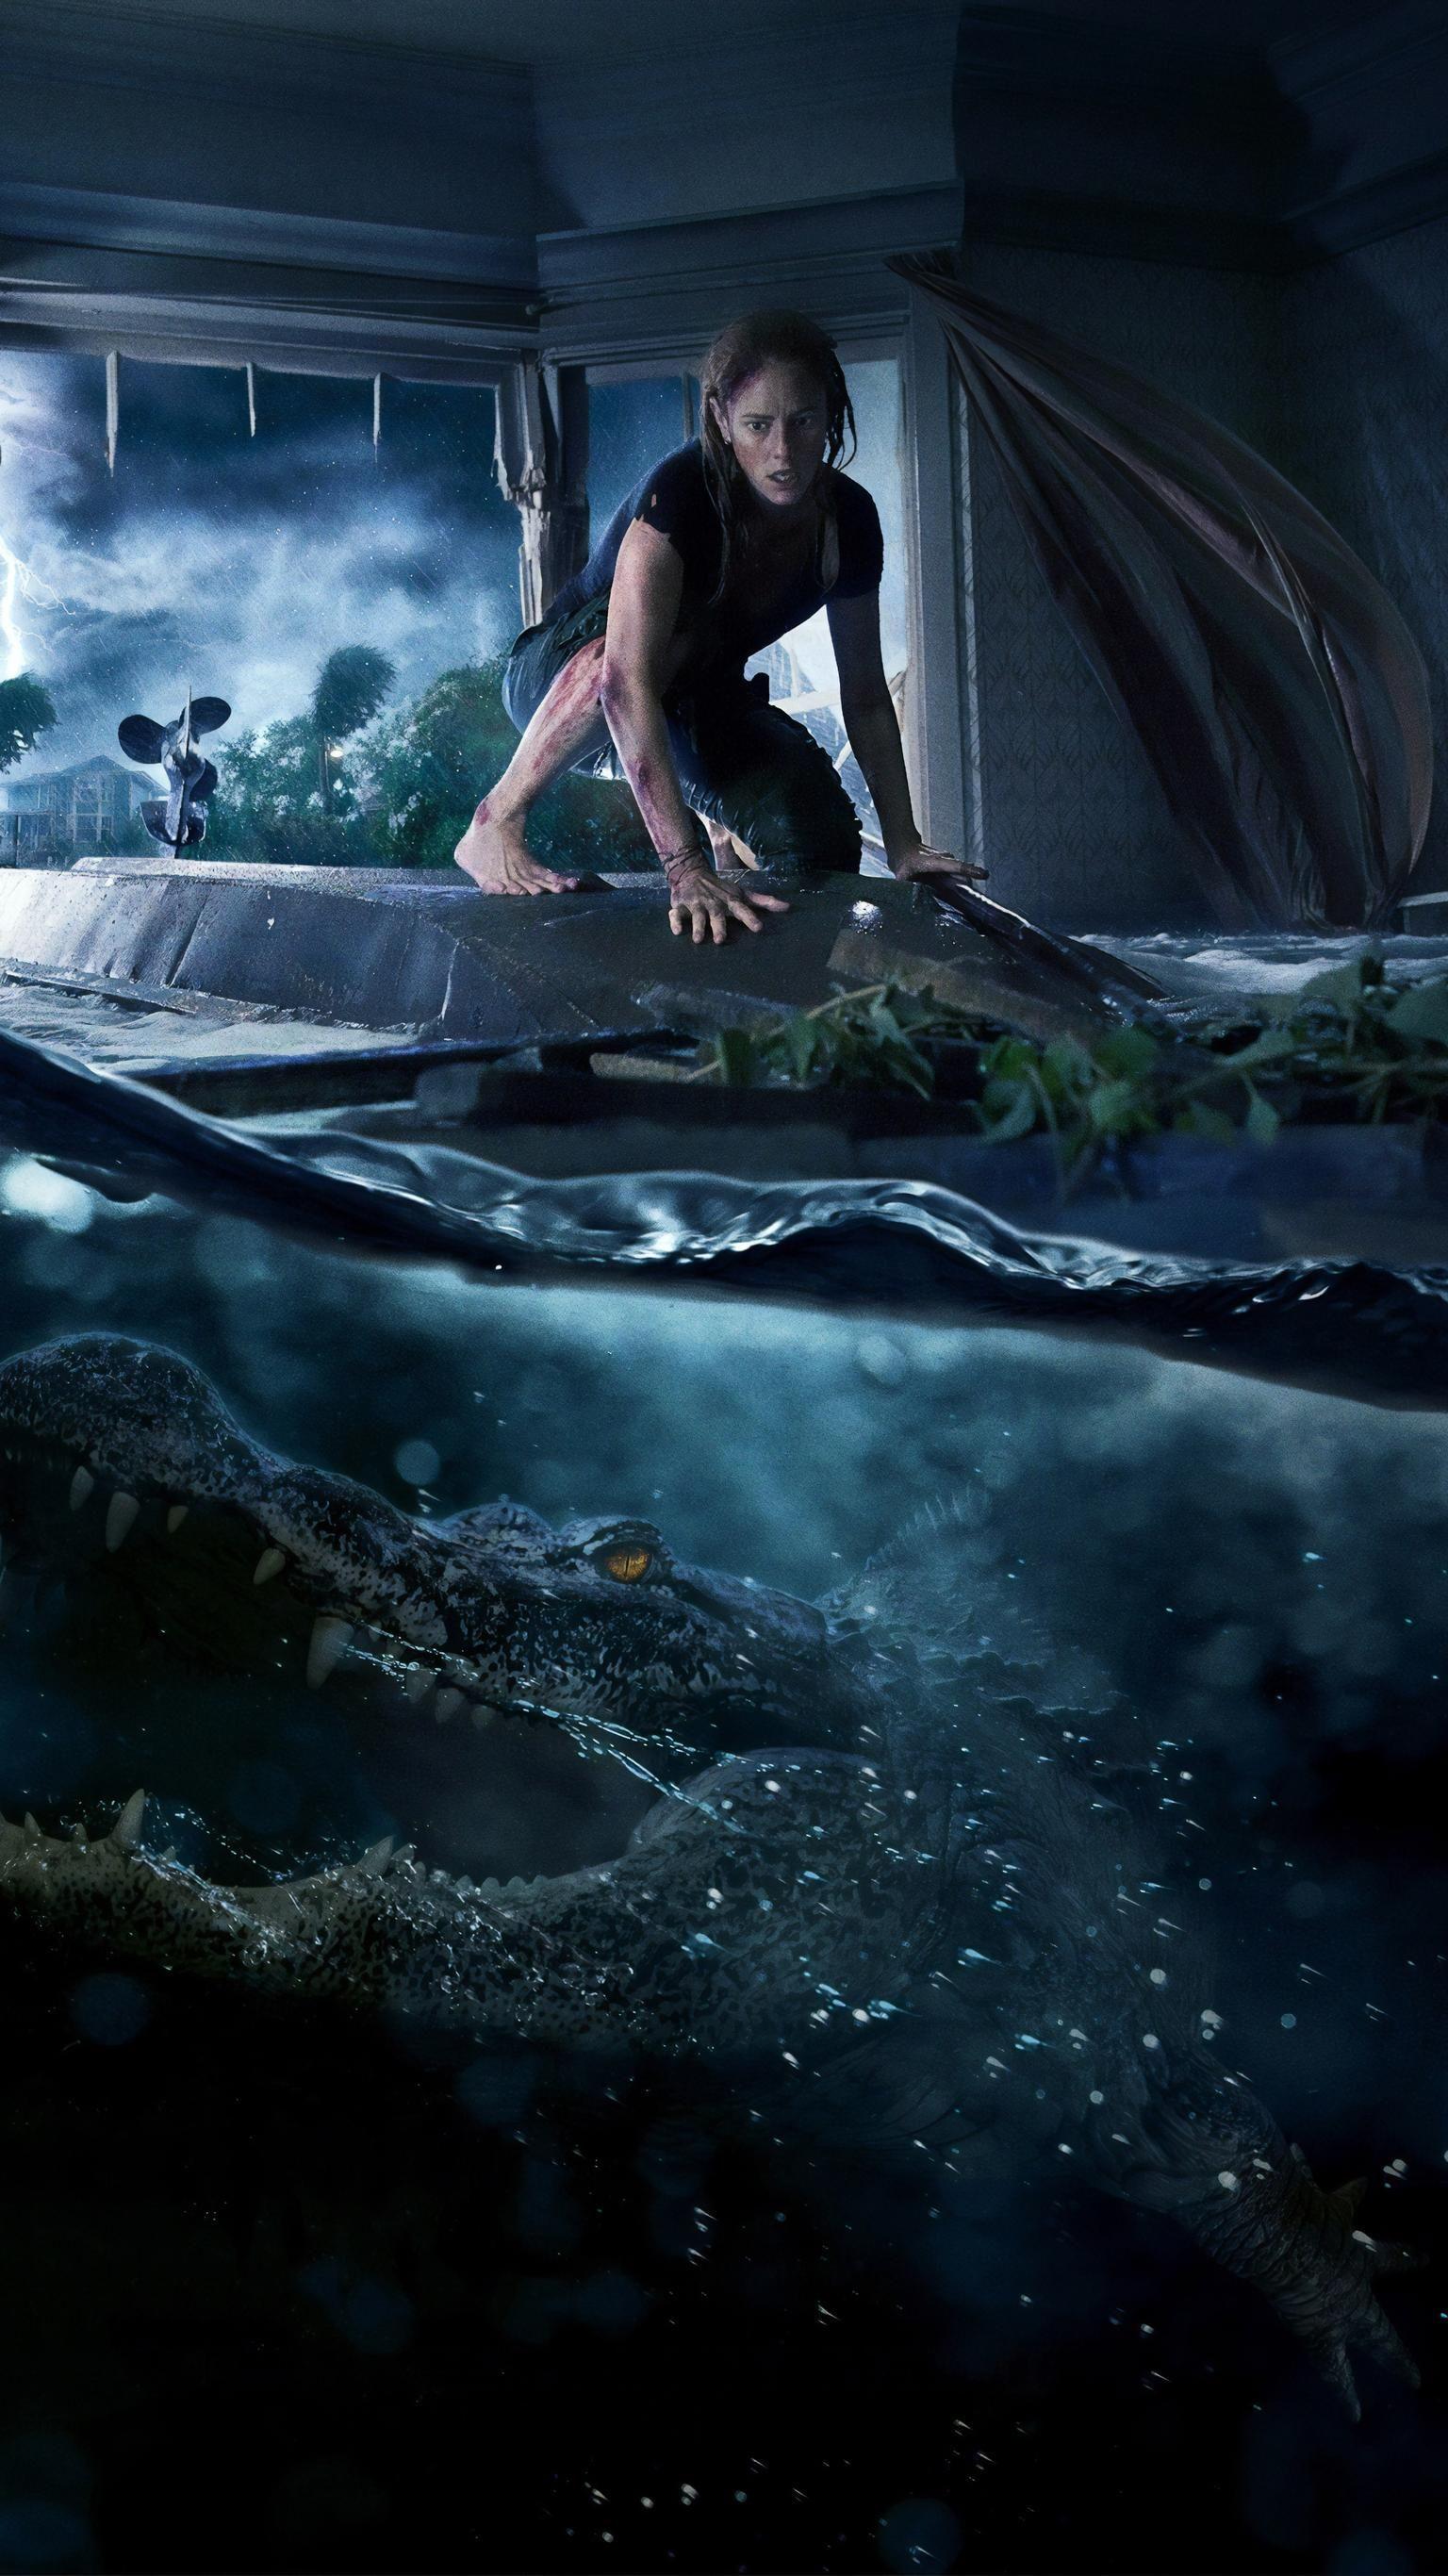 دانلود عکس استوک و بدون متن کاور تبلیغاتی فیلم سینمایی water monster با کیفیت 4K 